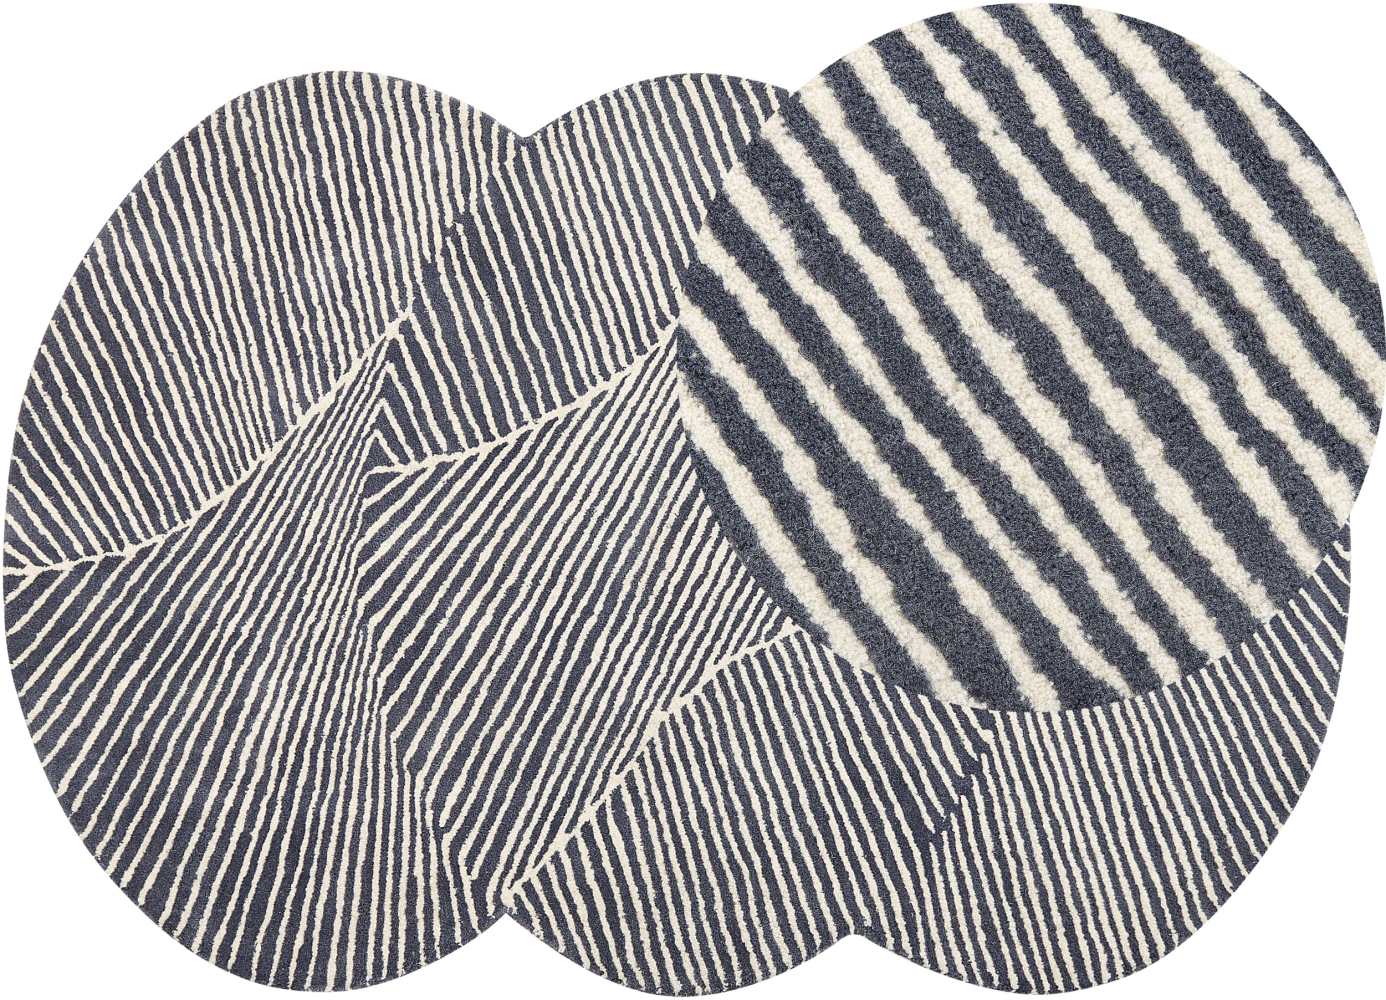 Teppich Wolle weiß graphitgrau 140 x 200 cm Streifenmuster Kurzflor ZABOL Bild 1